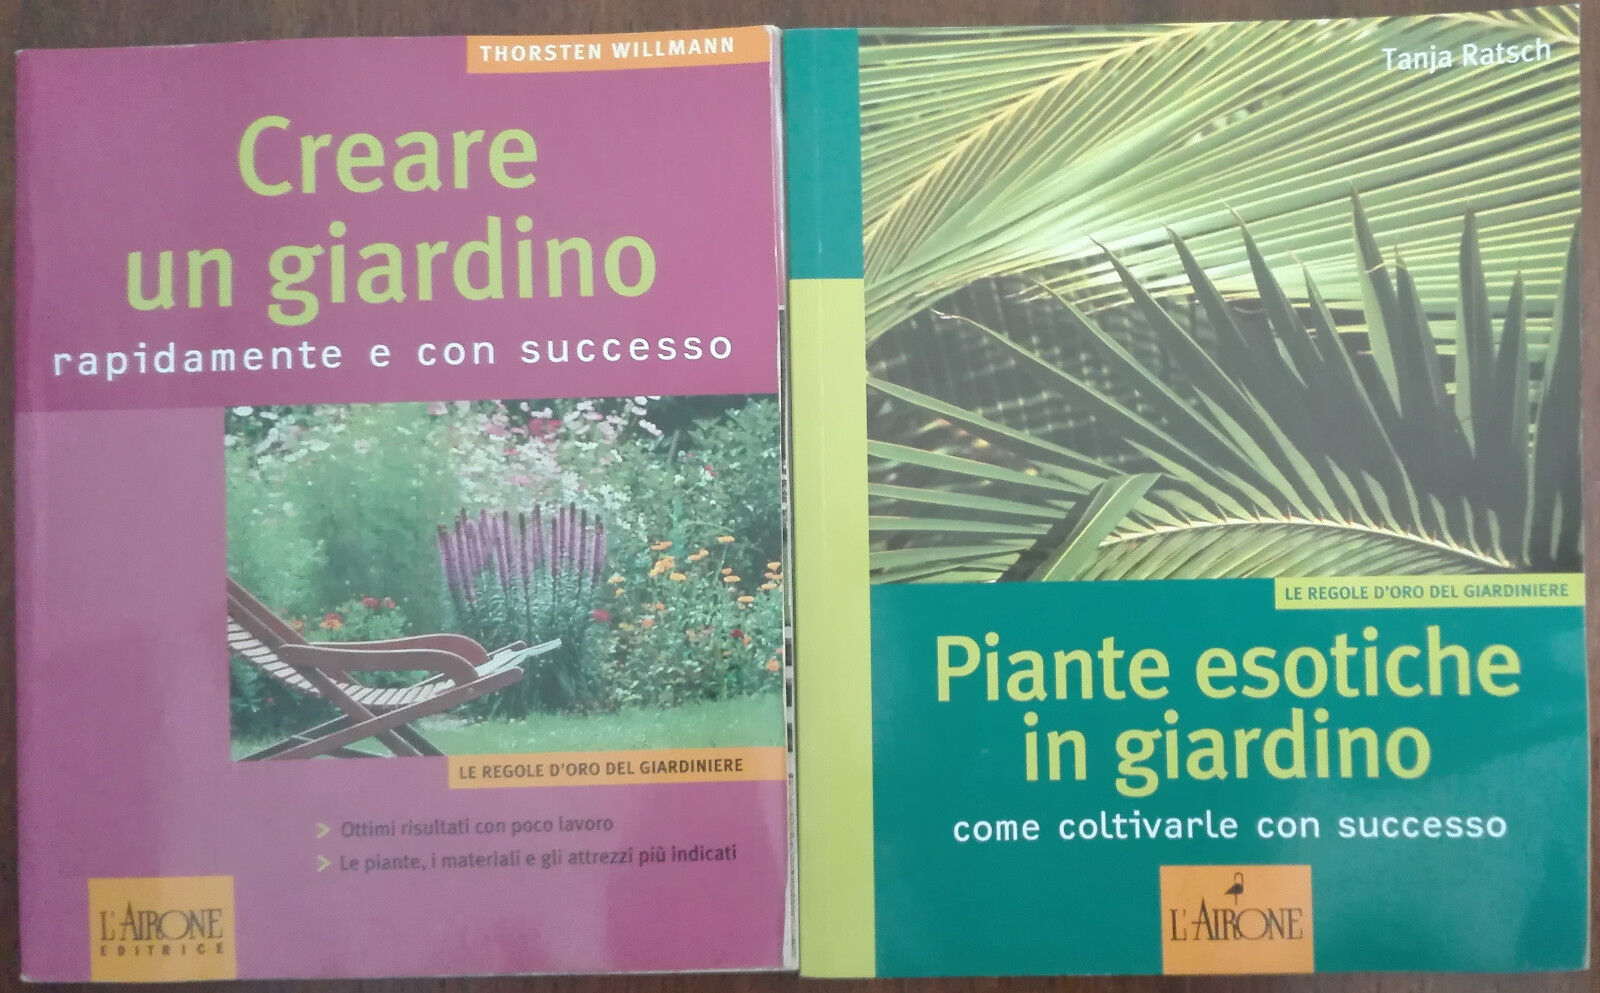 Creare un giardino;Piante esotiche in giardino-Willmann;Ratsch -L'airone,2006-A 